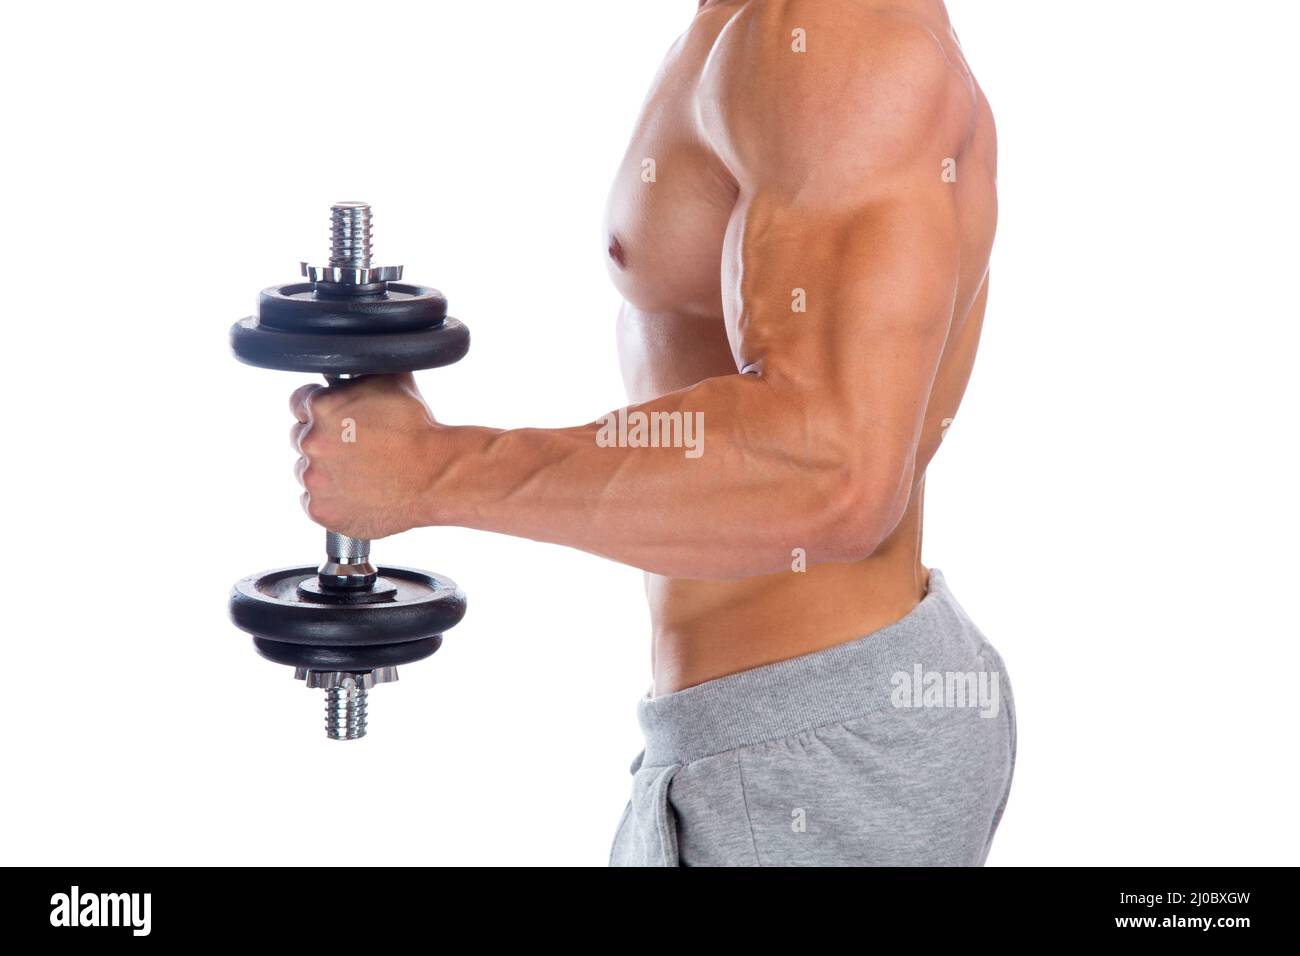 Potencia fuerte muscular bíceps brazo bodybuilder musculos musculos musculación placa libre de pesas Foto de stock